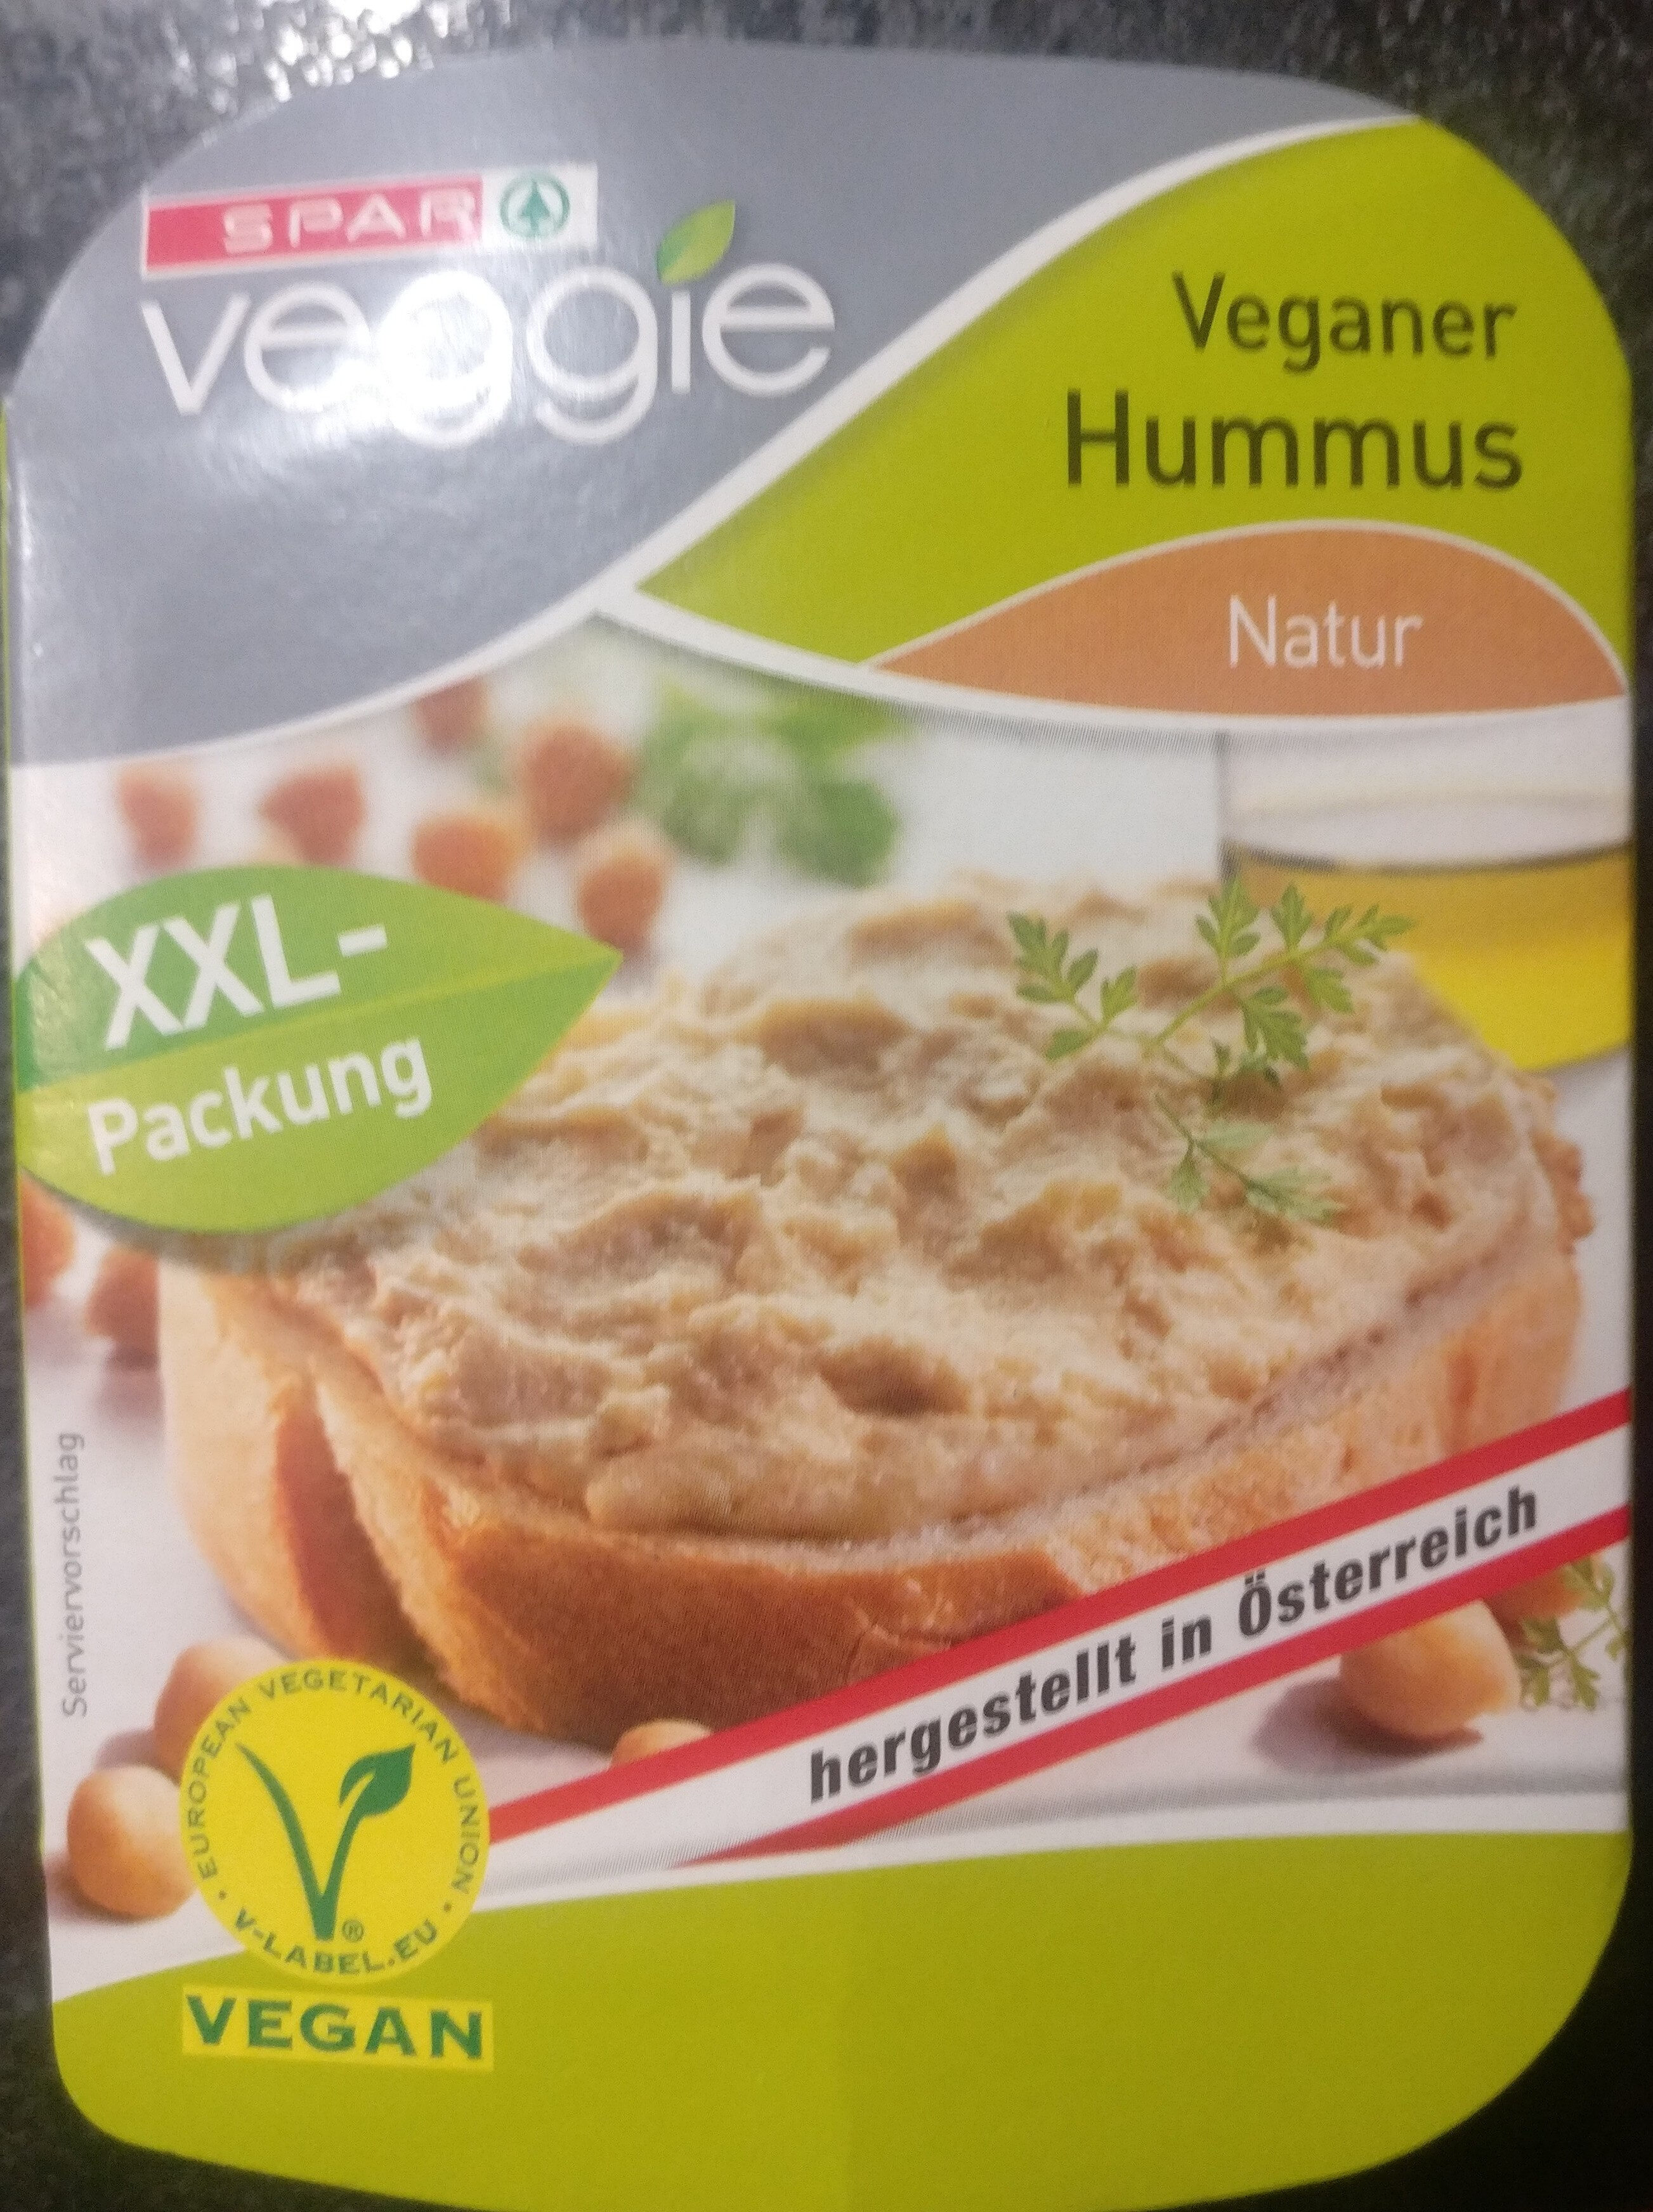 Veganer Hummus Natur - Product - de